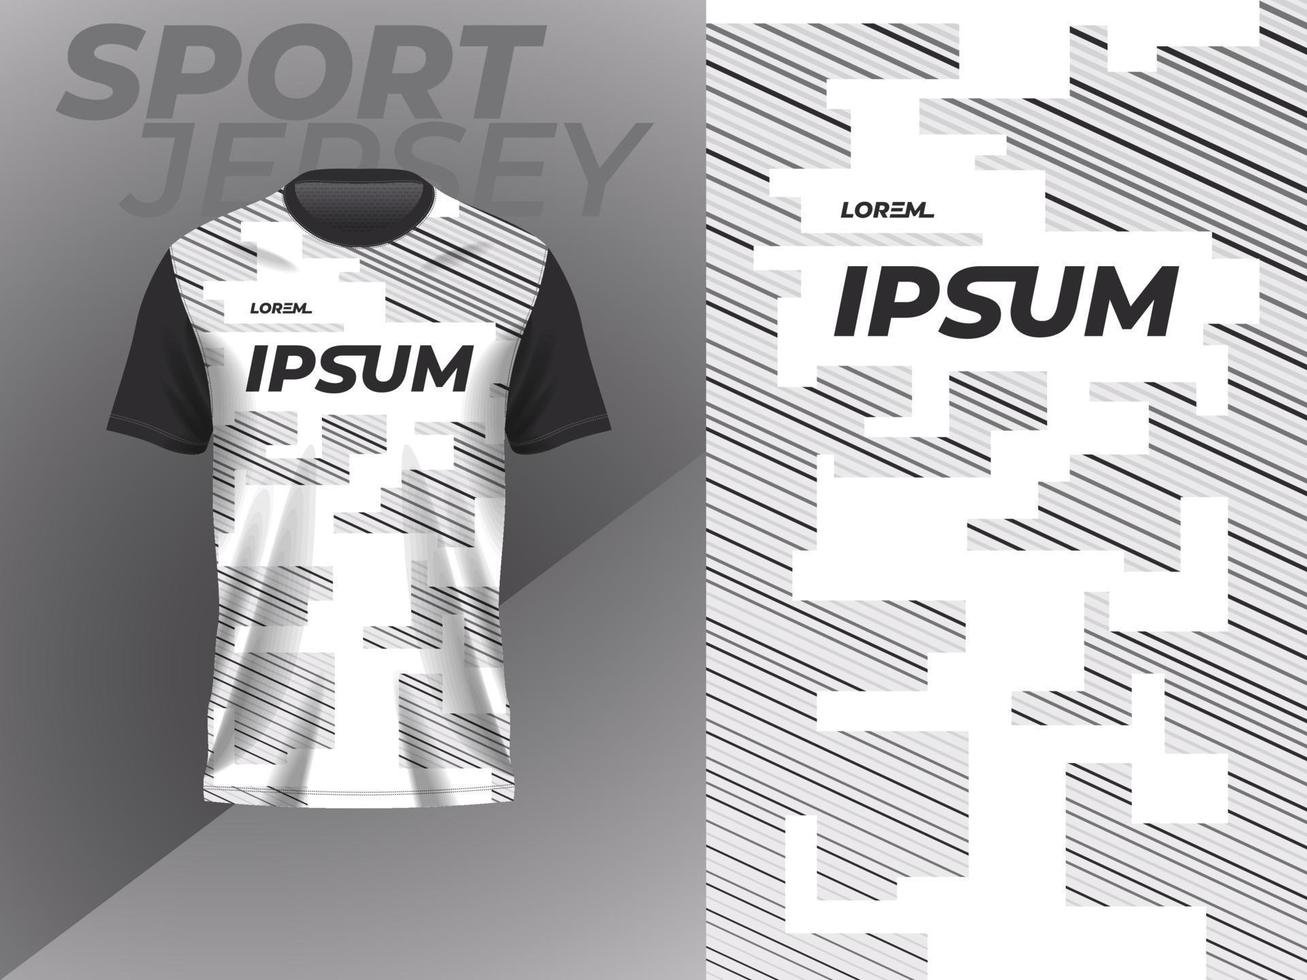 svart vit abstrakt tshirt sporter jersey design för fotboll fotboll tävlings gaming cross cykling löpning vektor